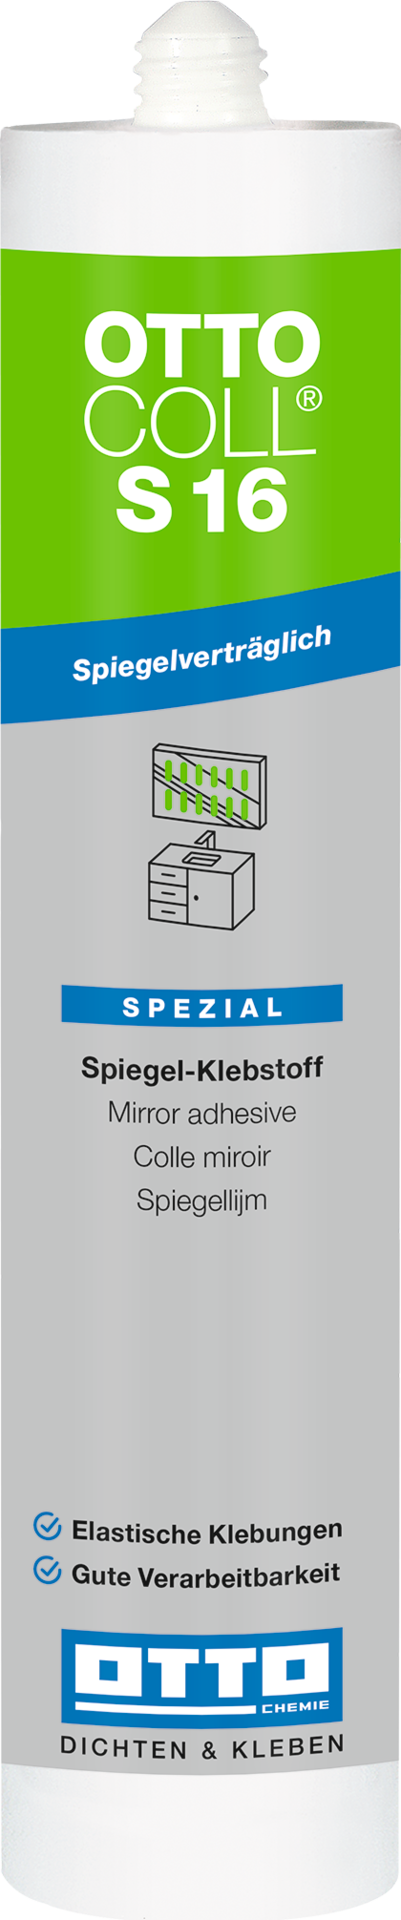 OTTOCOLL® S16 - Der Spiegel-Klebstoff 310 ml 